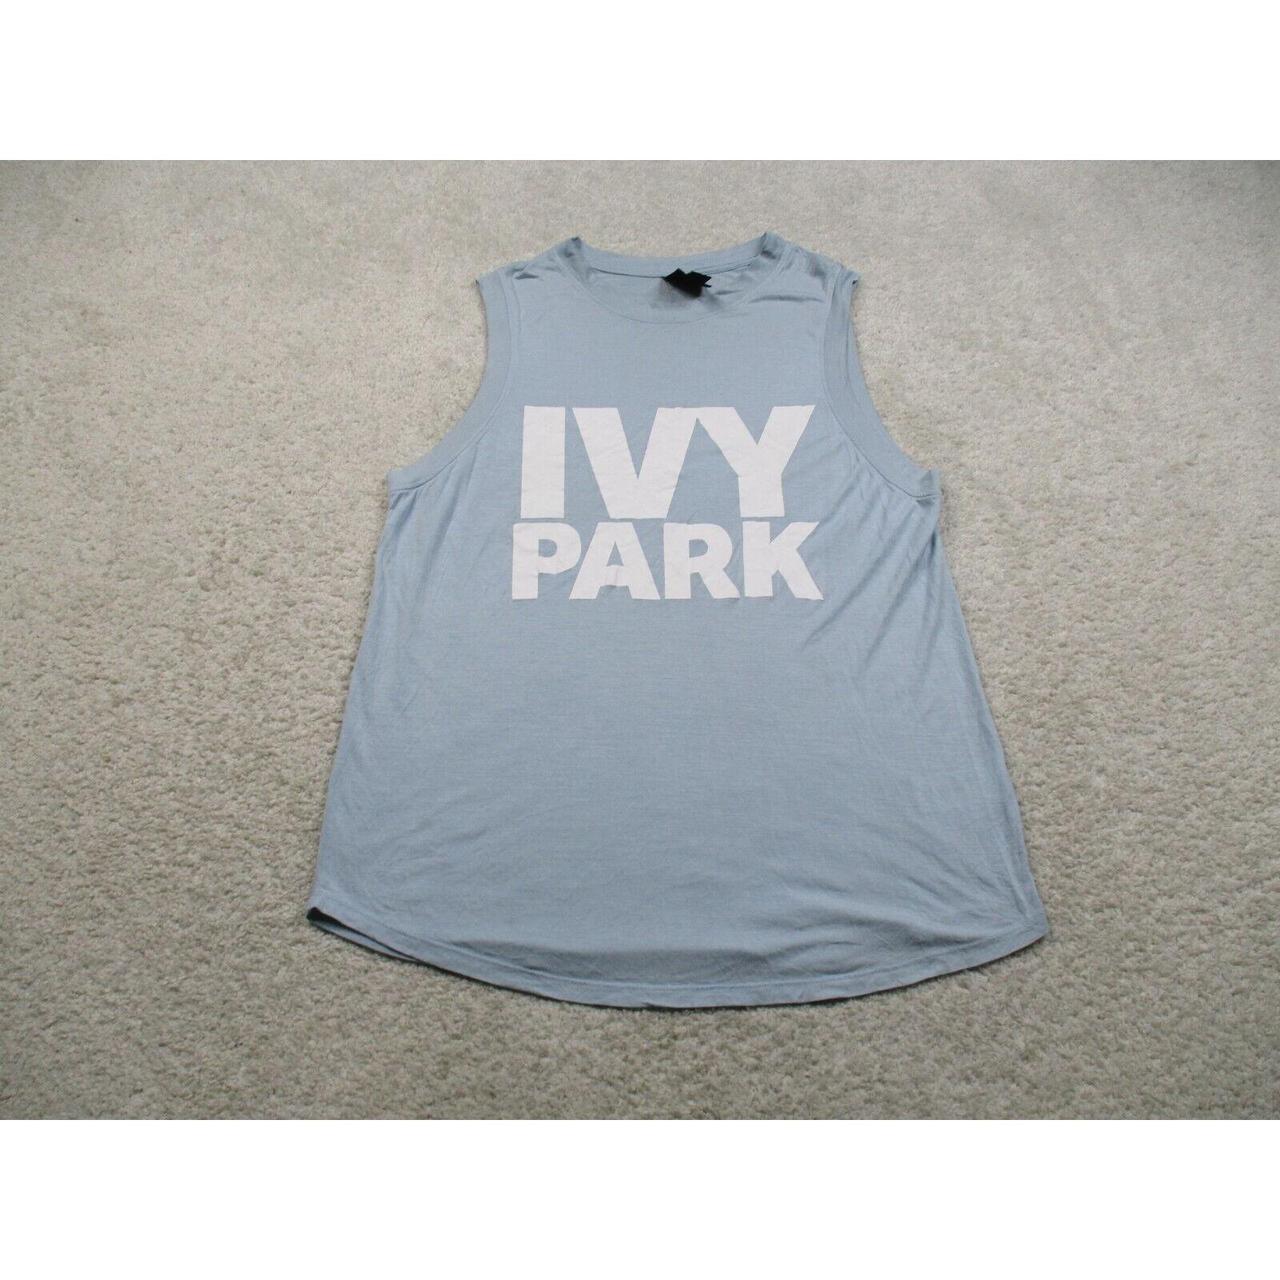 Ivy Park Women's Blue Coat | Depop